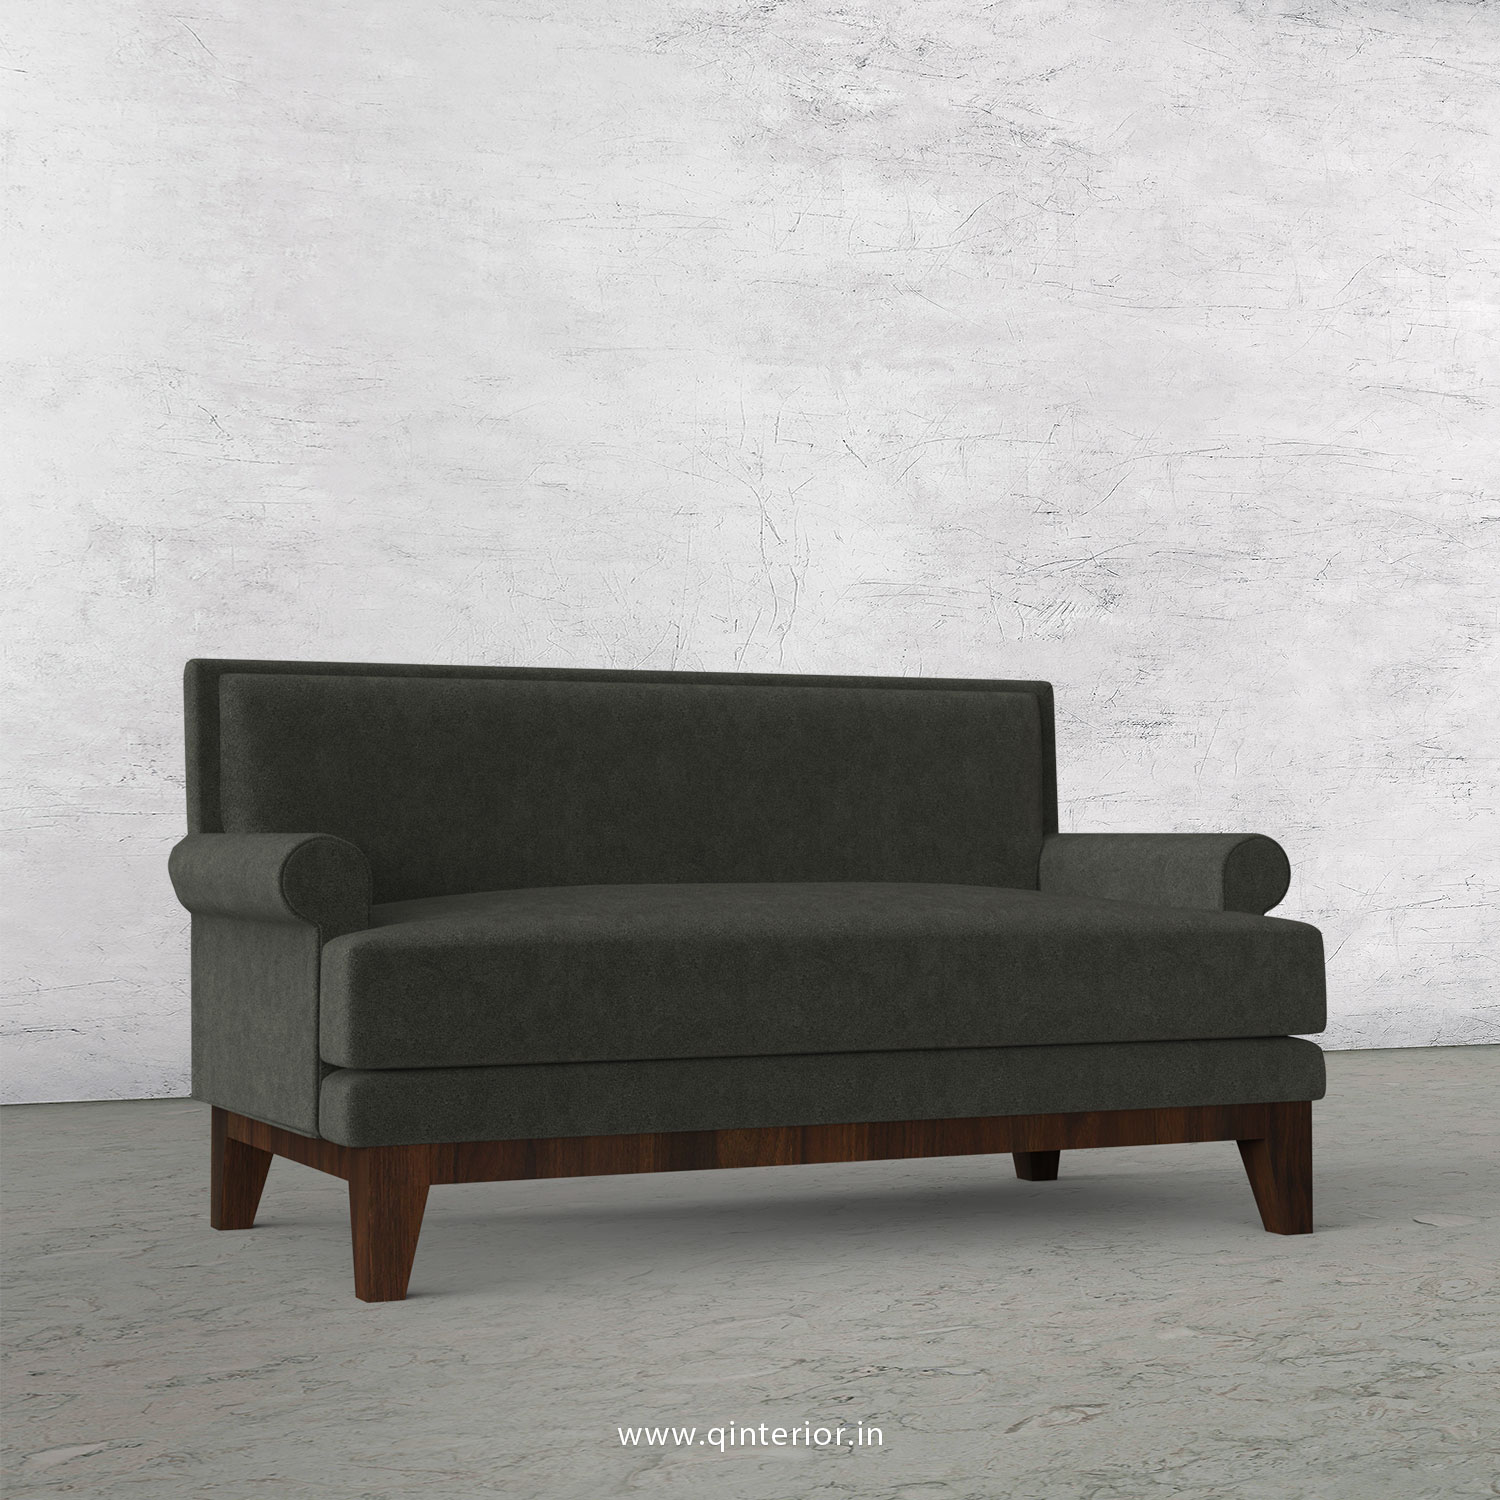 Aviana 2 Seater Sofa in Velvet Fabric - SFA001 VL15